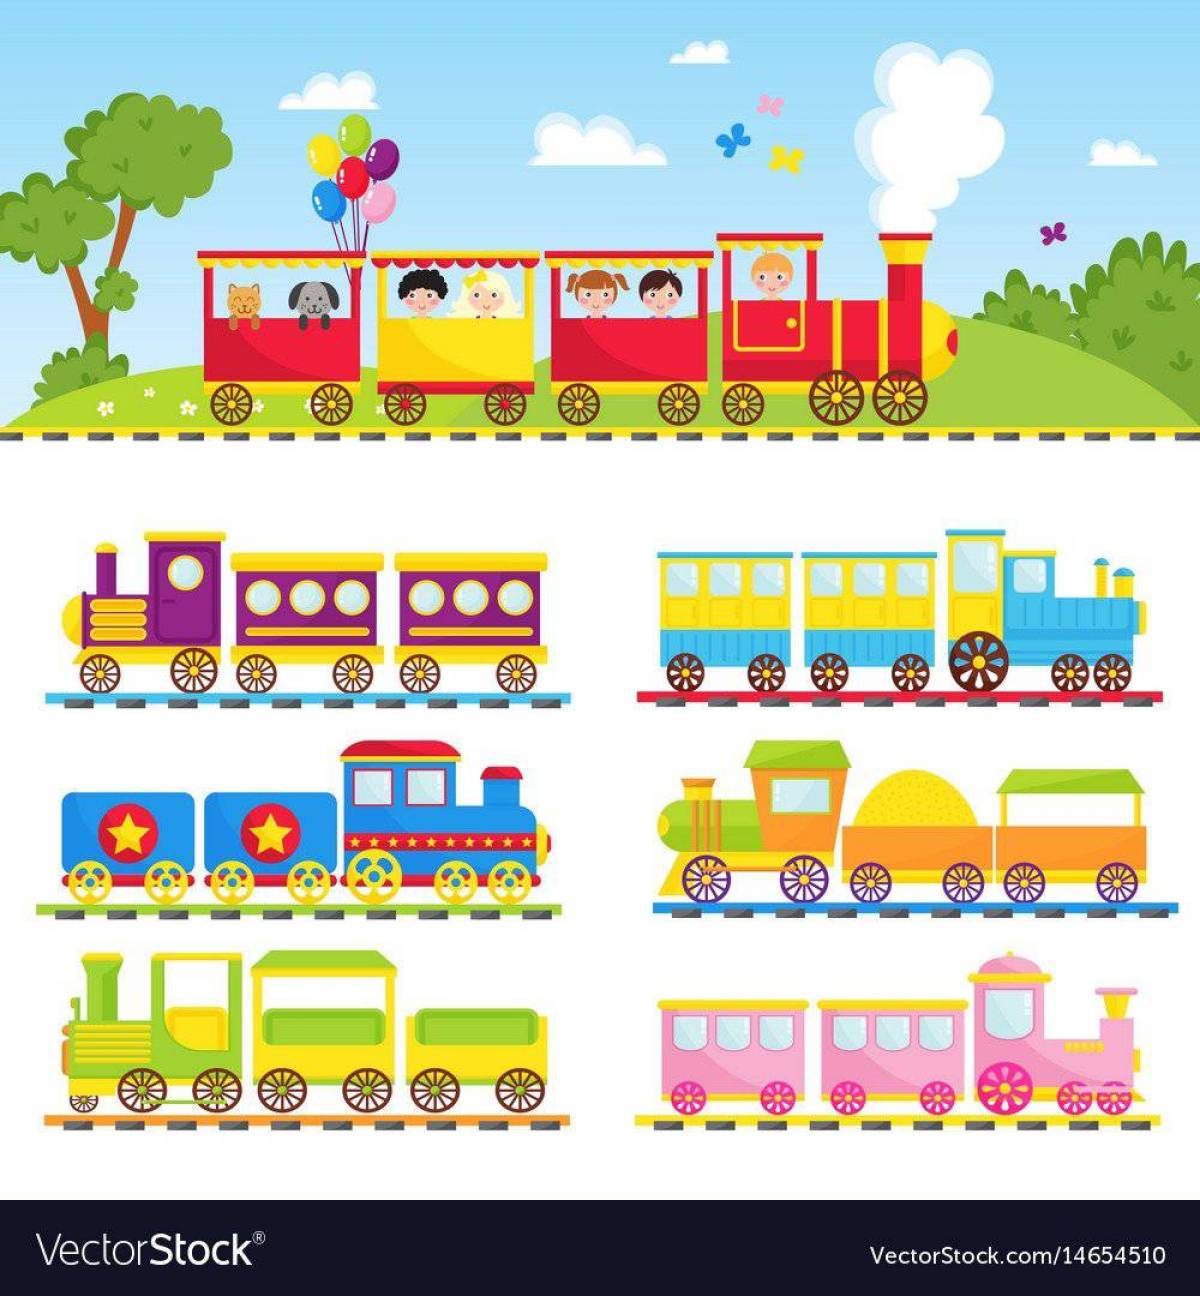 Поезд папа мама. Поезда для детей. Поезд картинки для детей дошкольного возраста. Транспорт поезд для малышей. Поезд вектор.